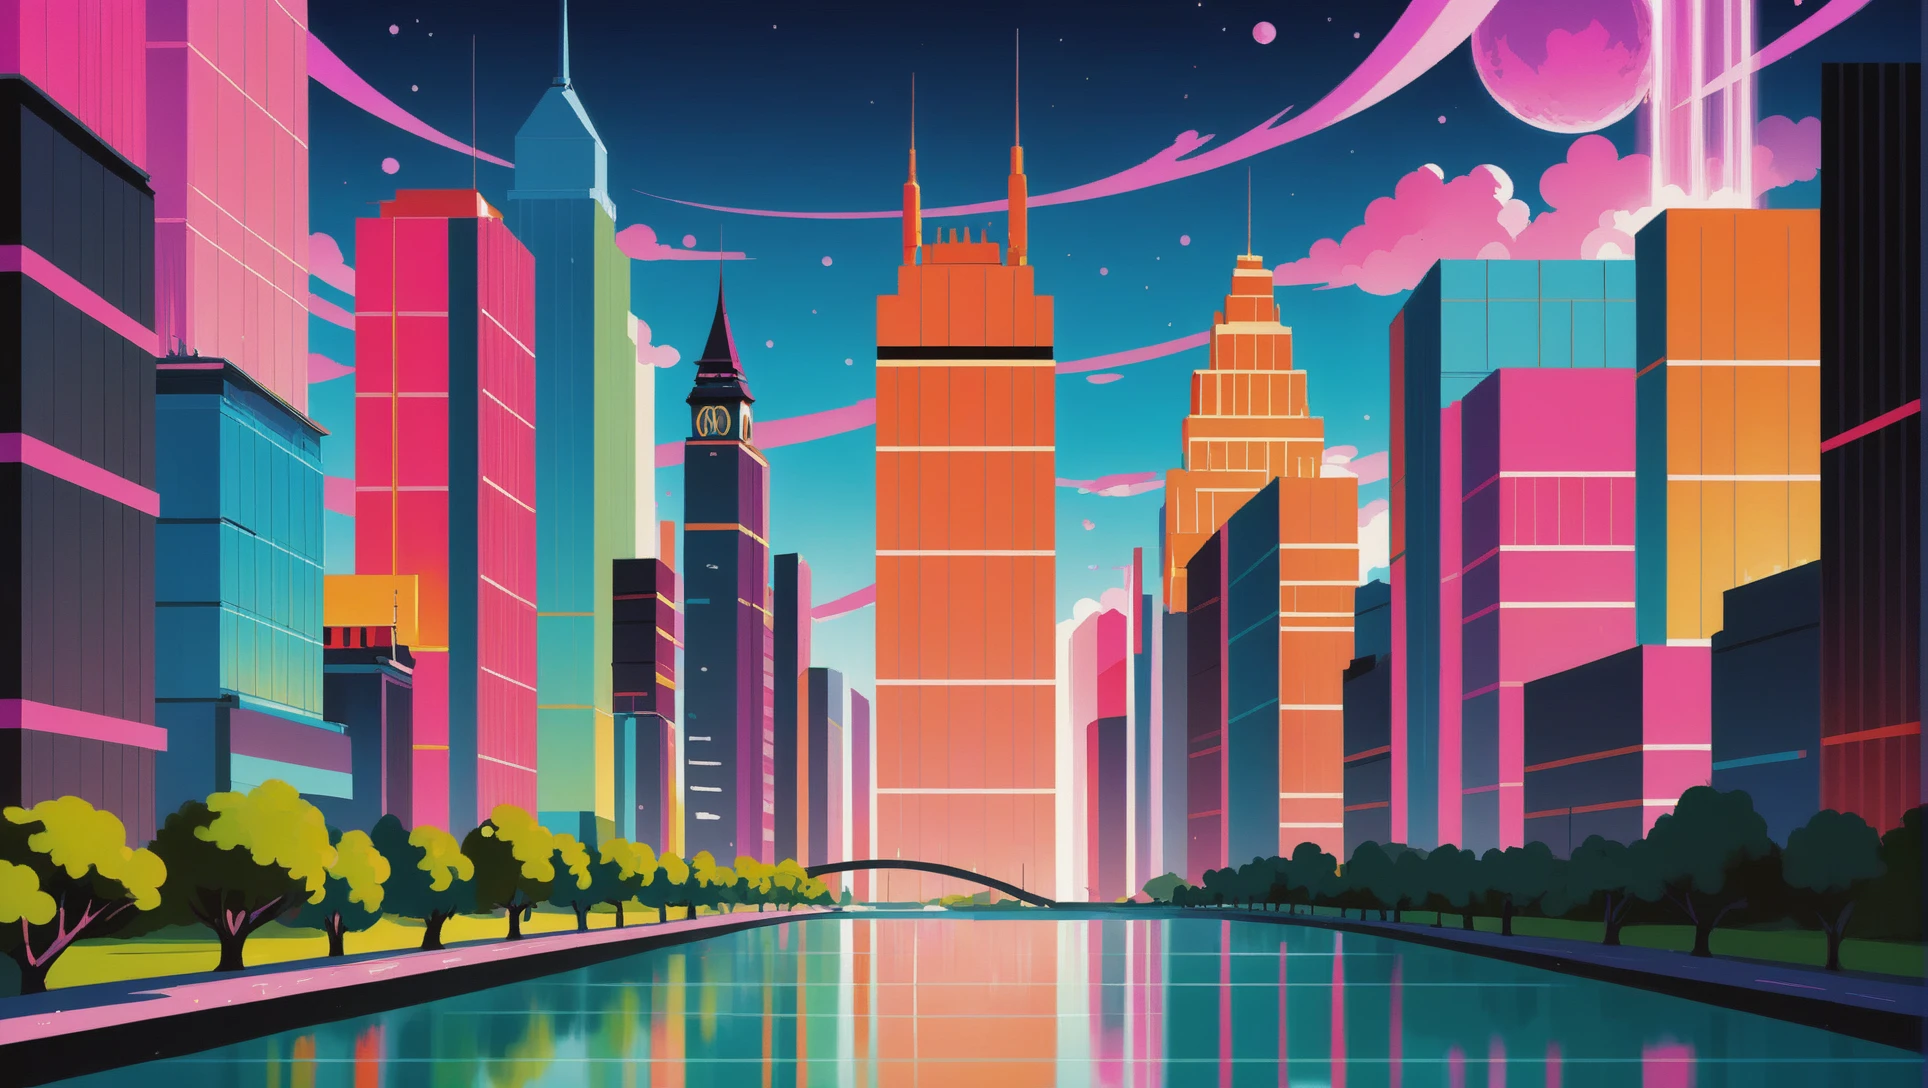 фон фильма в стиле аниме, веселый фантастический город на краю вселенной